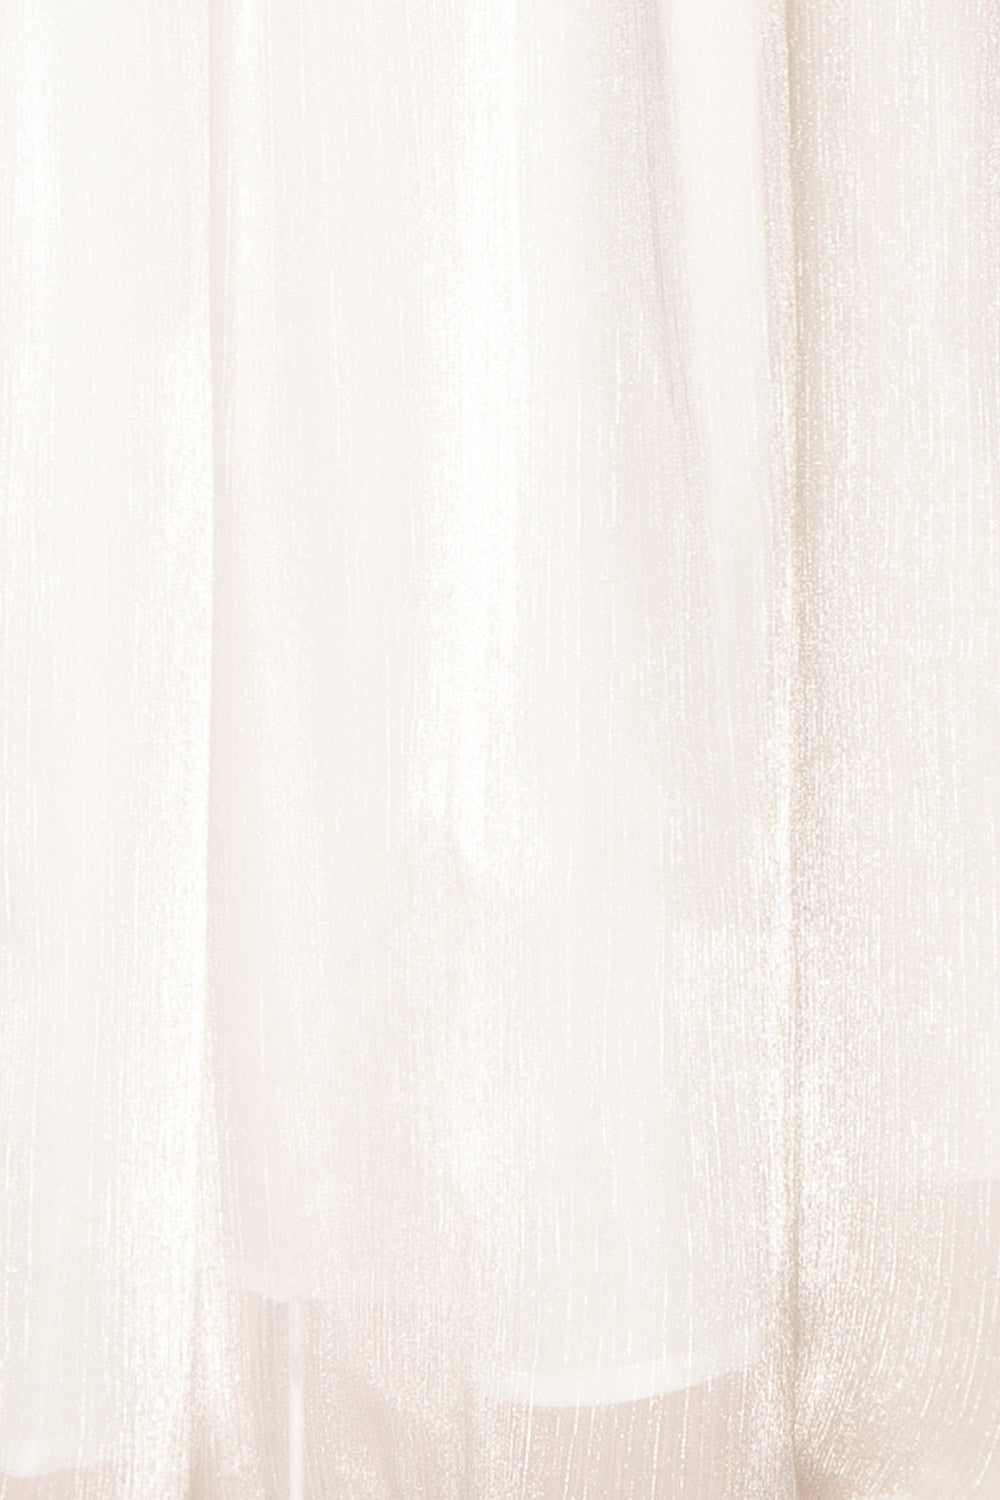 Anaiis White Strapless Midi Dress | Boutique 1861 fabric 